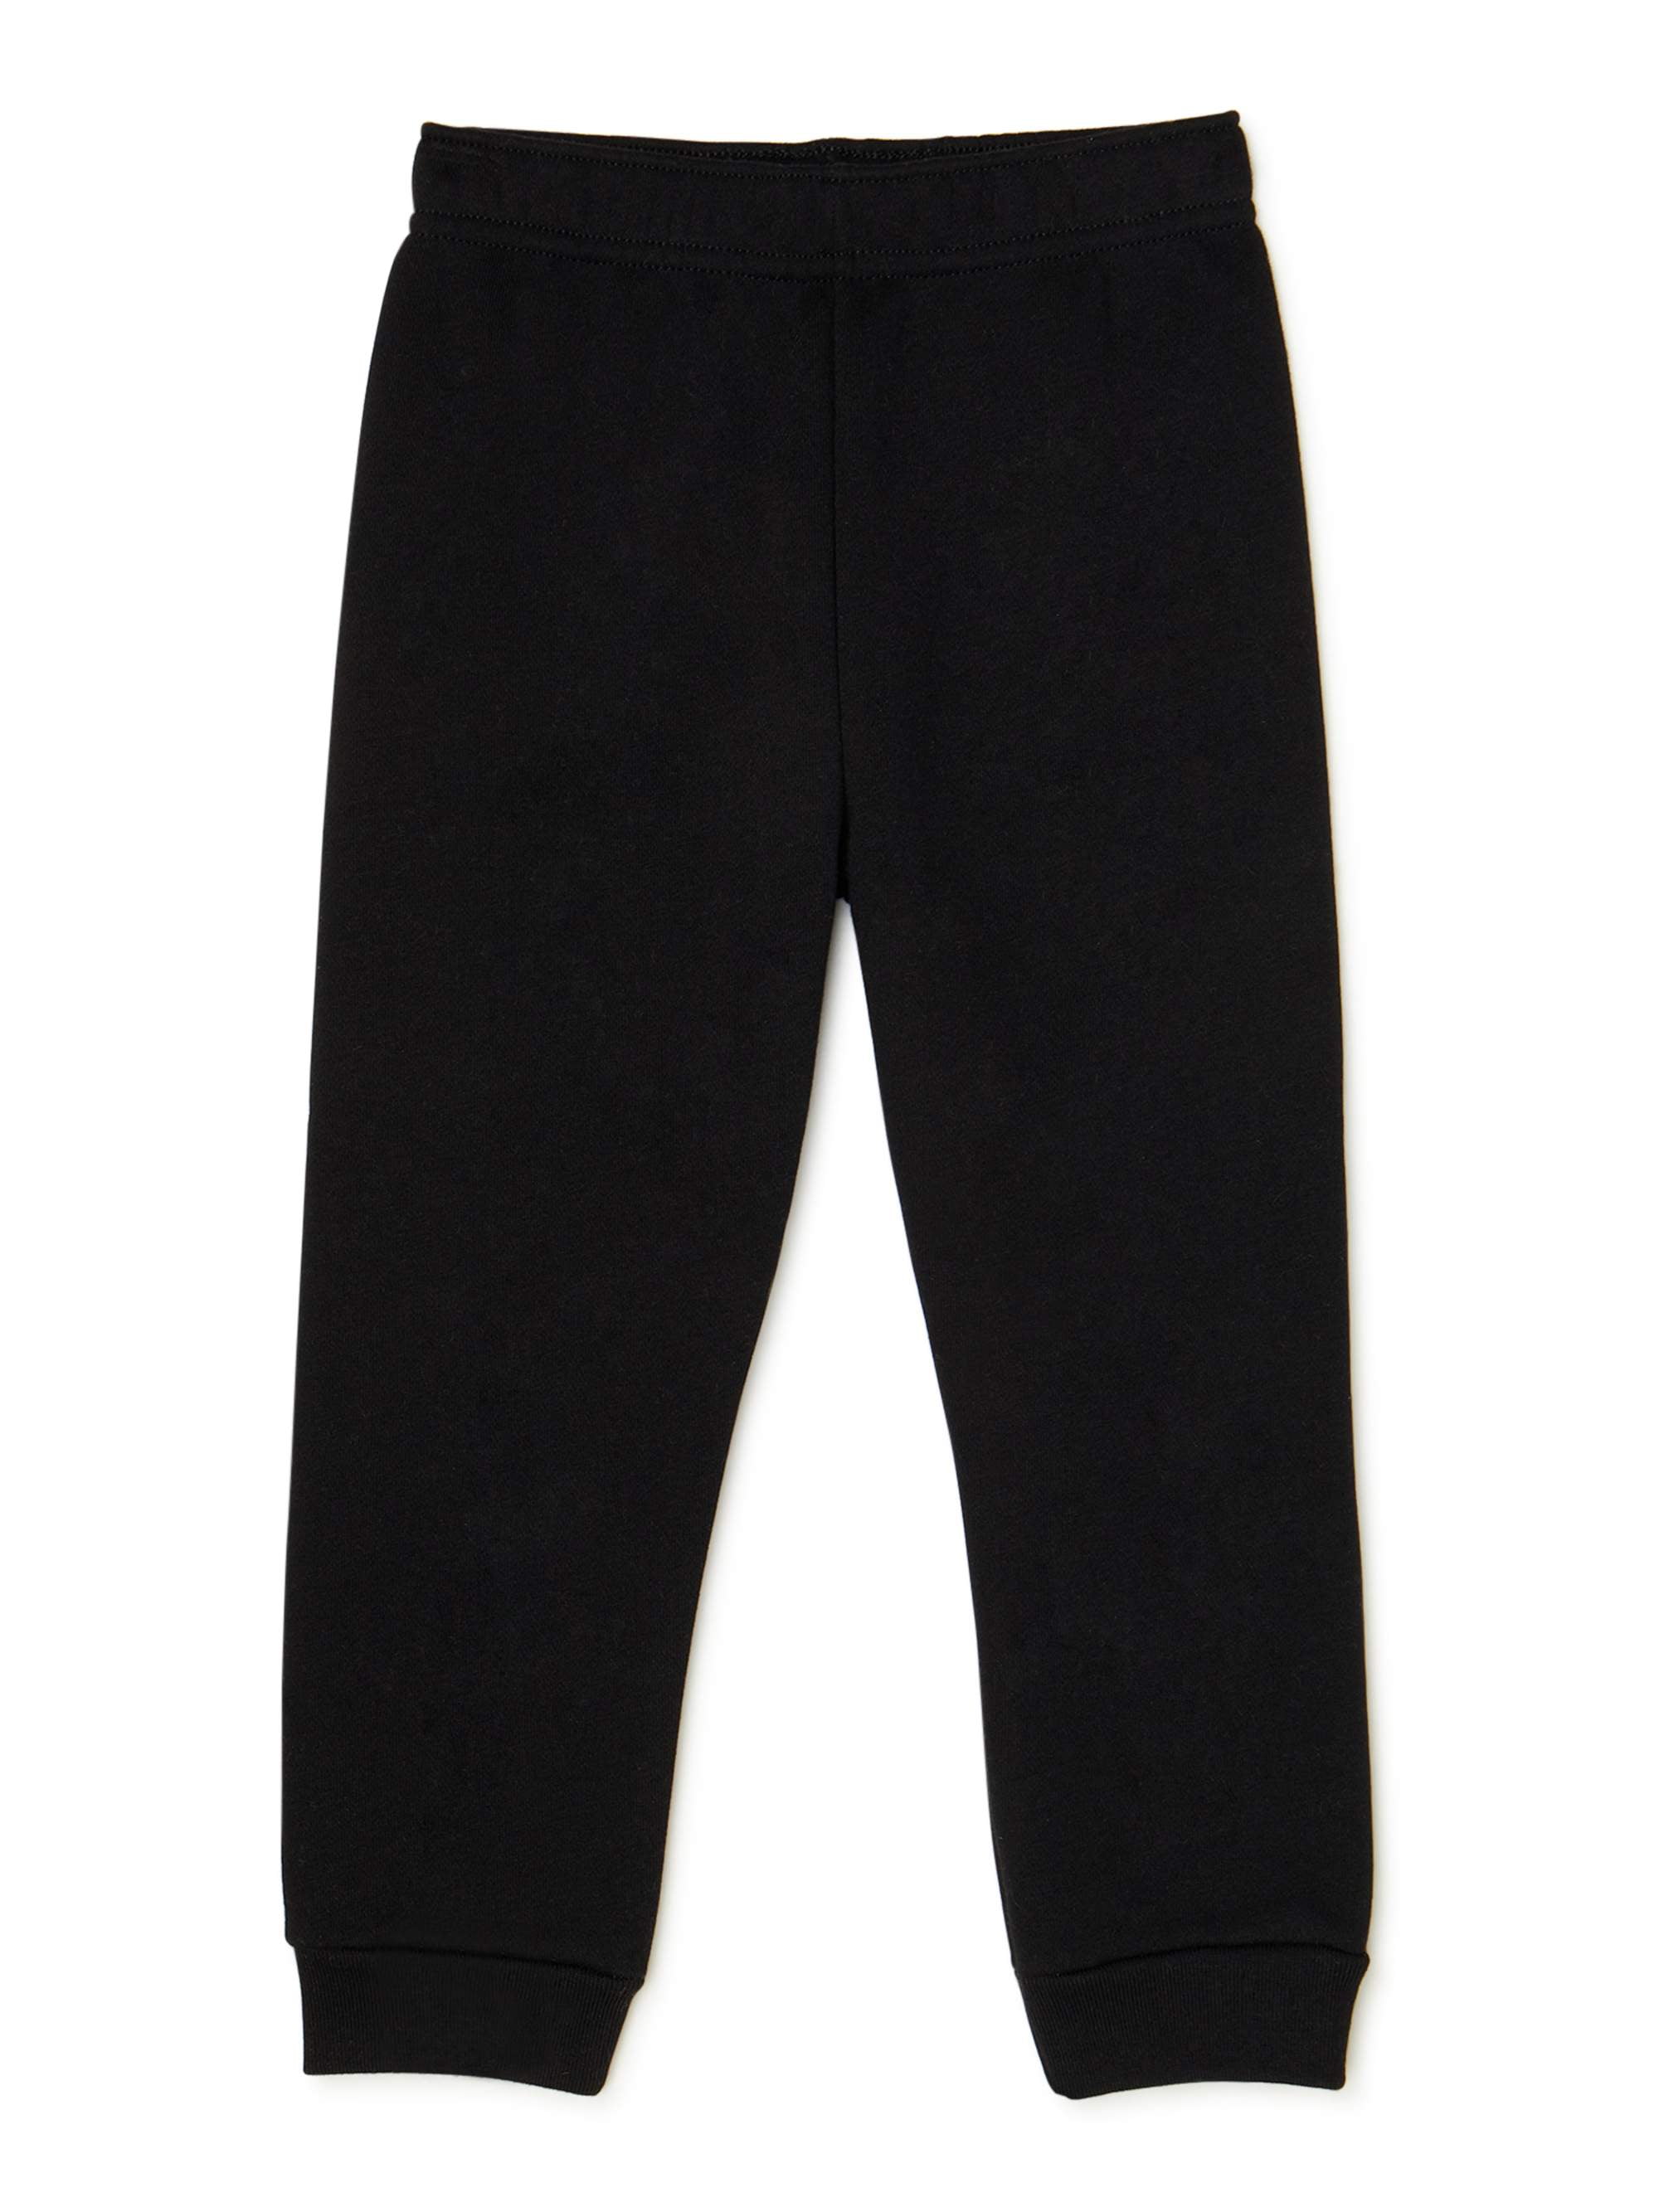 2 Pair Solid Black Garanimals Fleece Pants Size 3T 